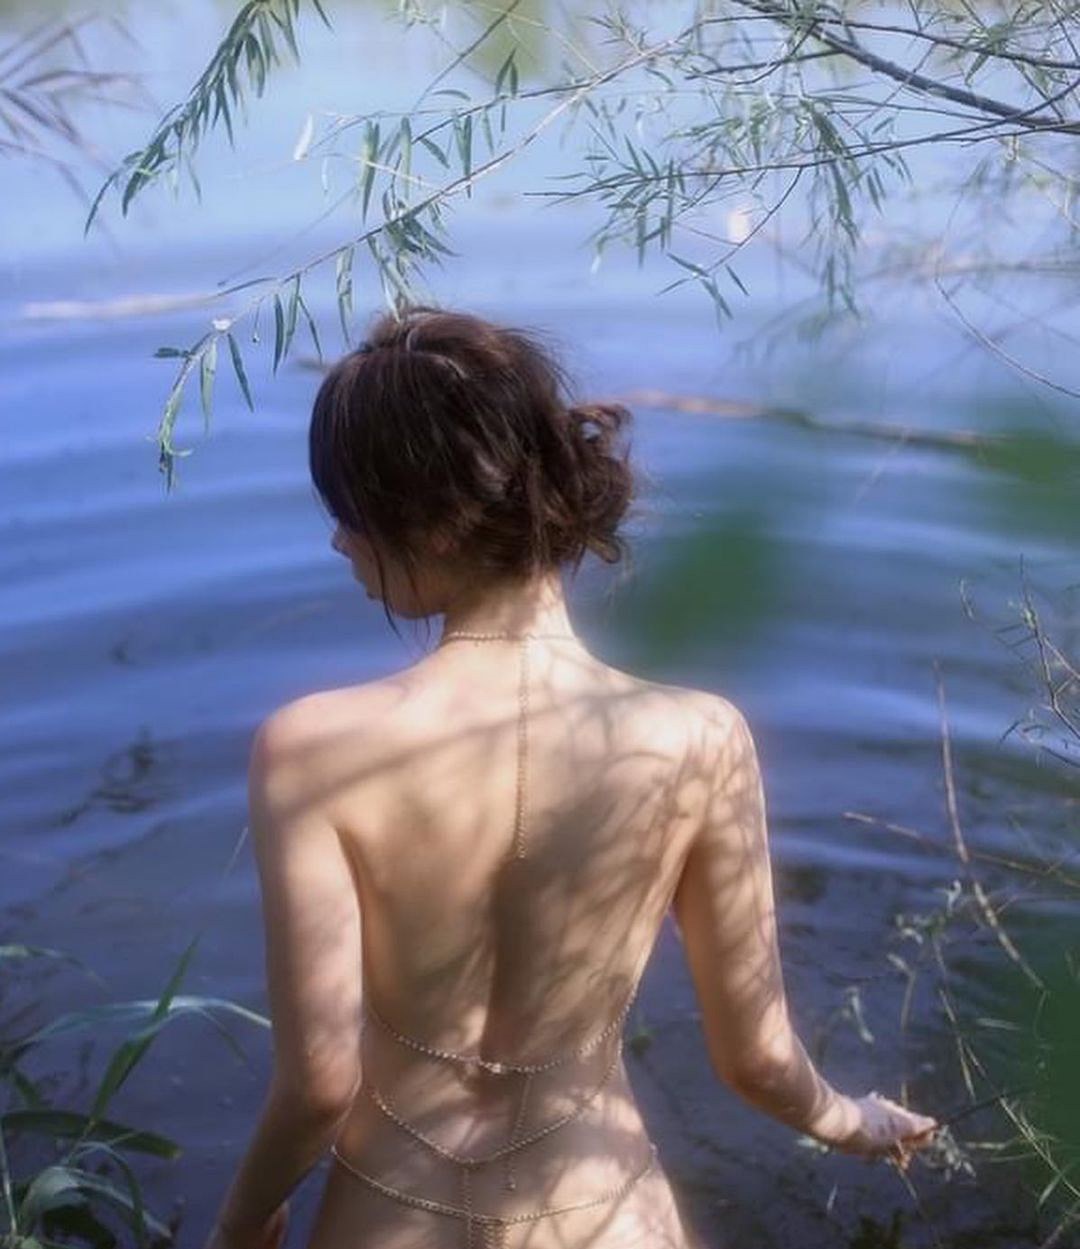 Cô gái Chiết Giang buông áo bên hồ đẹp như tranh, không gợi dục phản cảm - Hình 3